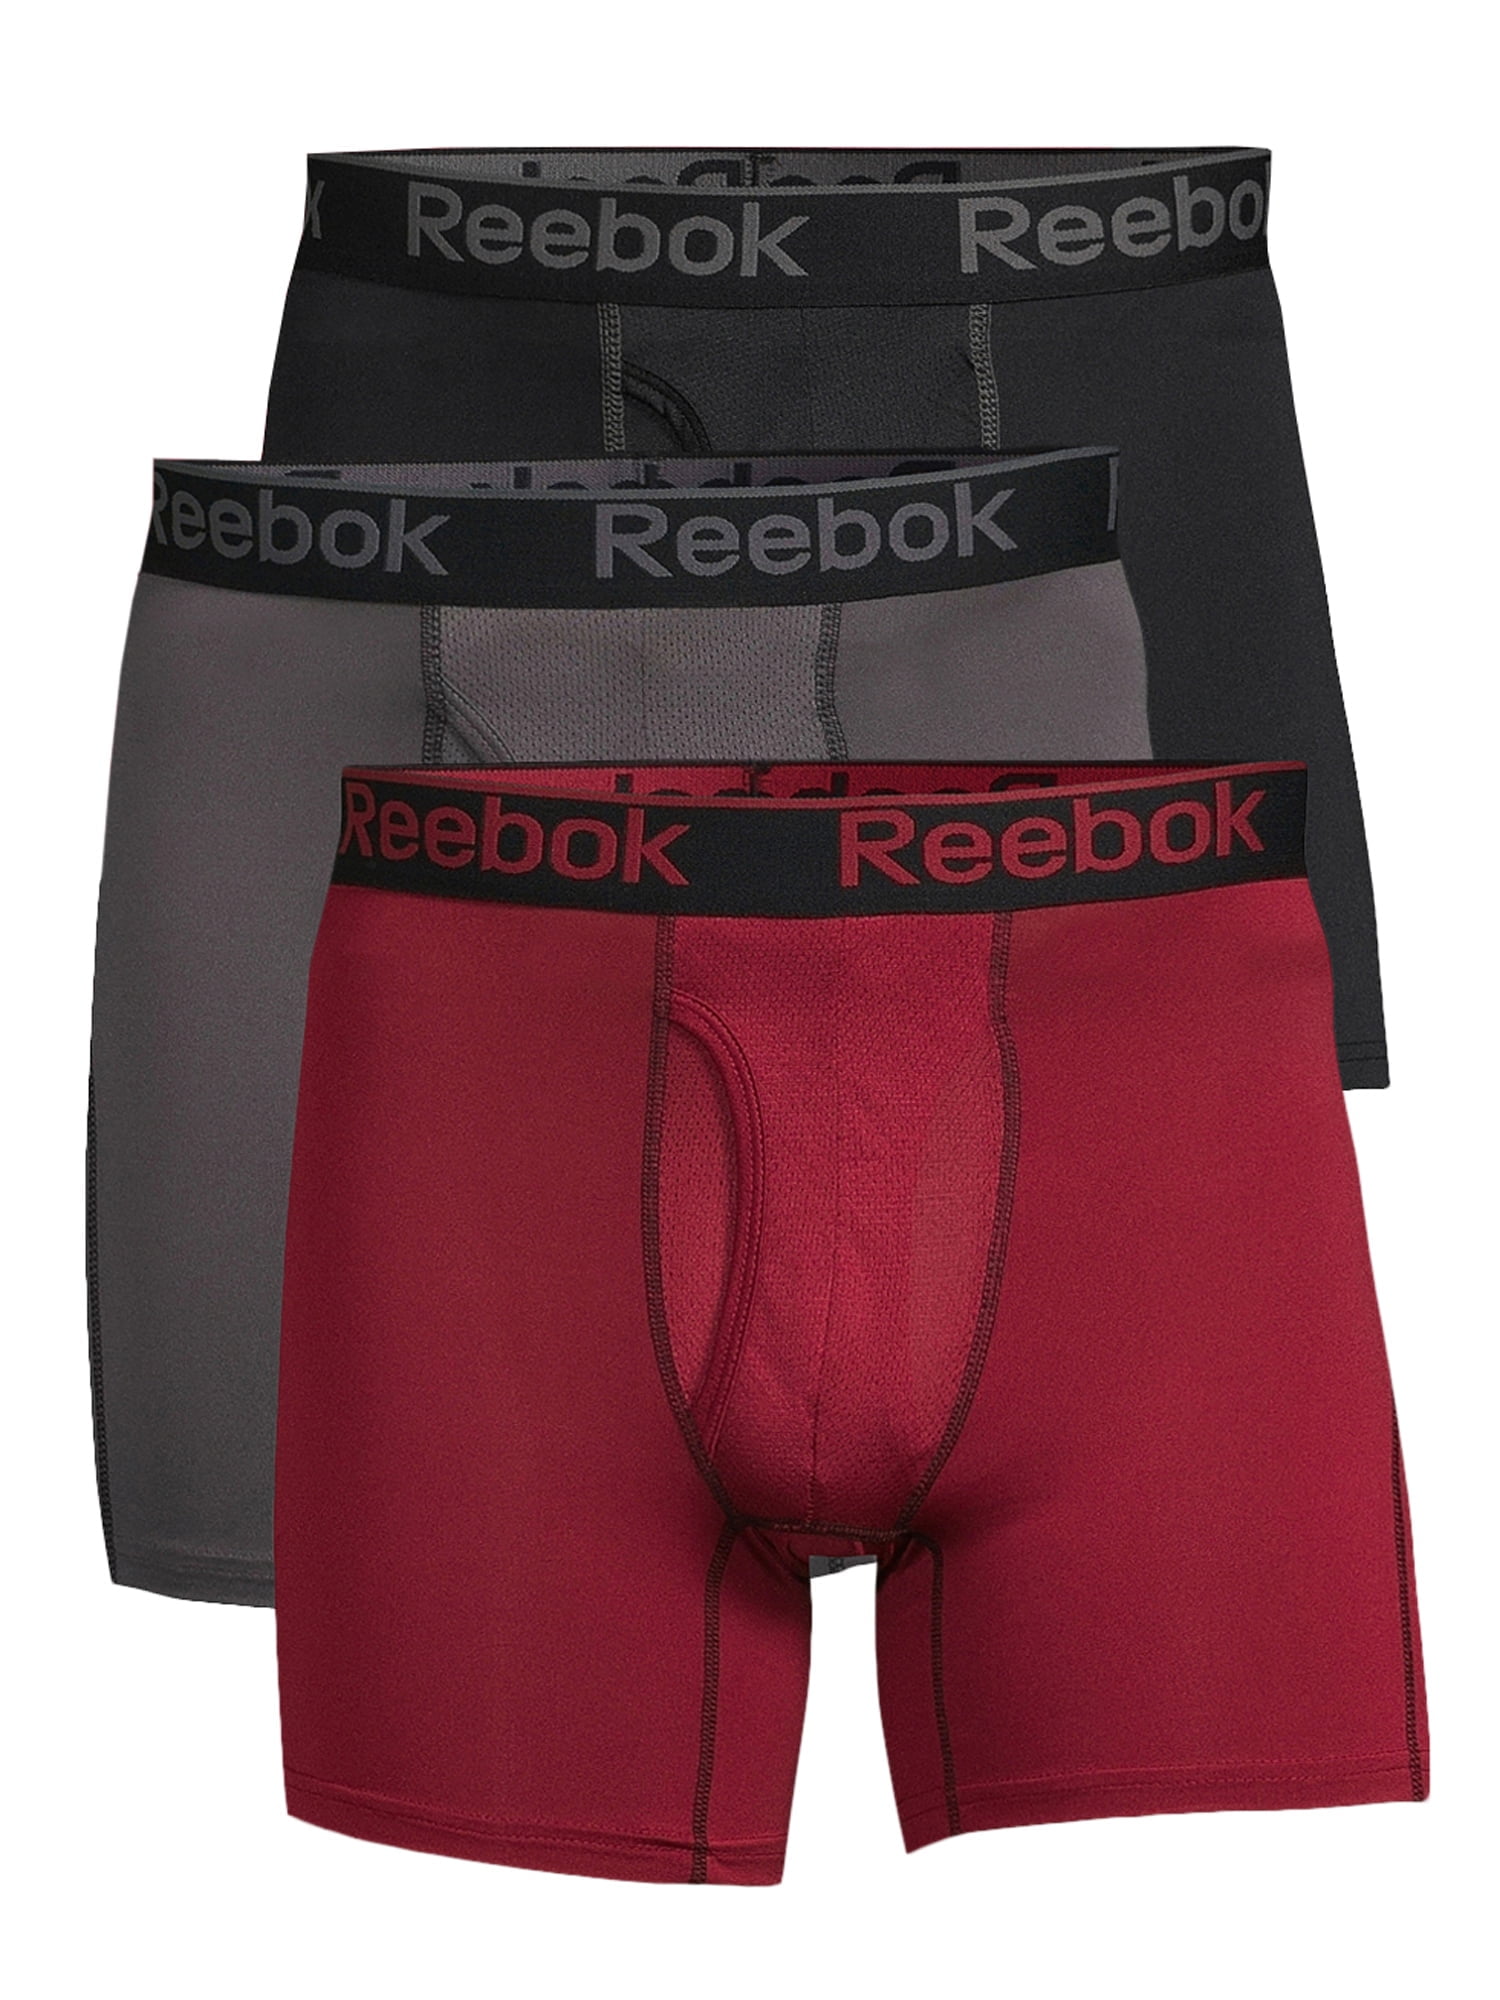 Big & Tall Performance Boxer Briefs Reebok Men’s Underwear 3 Pack 